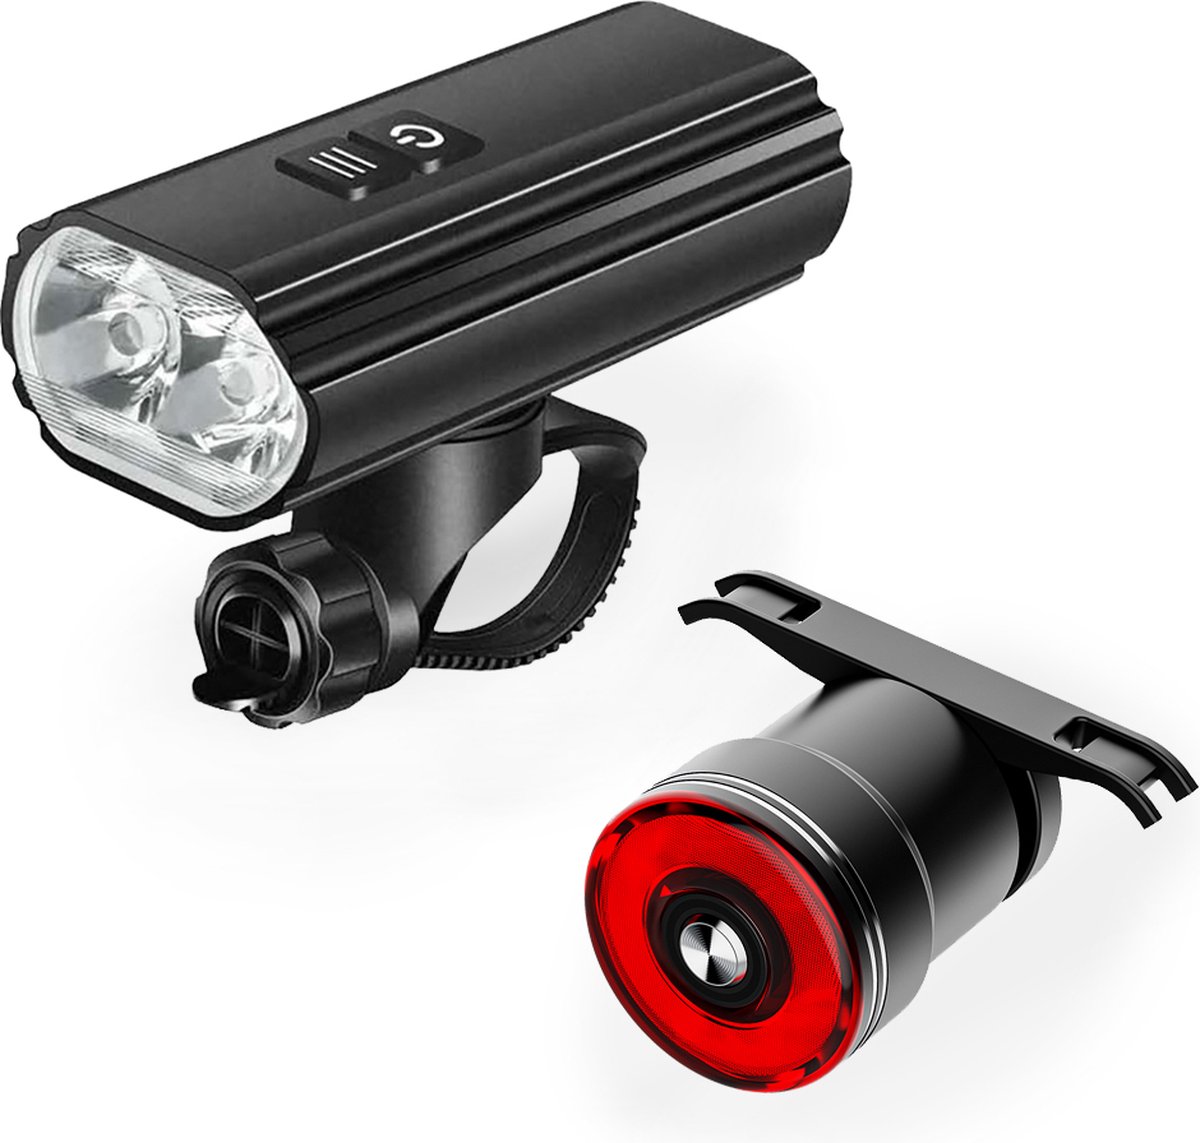 Lightyourbike ® SKYLINE 1.800 & BRAKE - Fietsverlichting USB Oplaadbaar - Fietslamp voor & Fiets achterlicht - LED Fietsverlichting set - 1.800 Lumen - Racefiets & MTB Verlichting